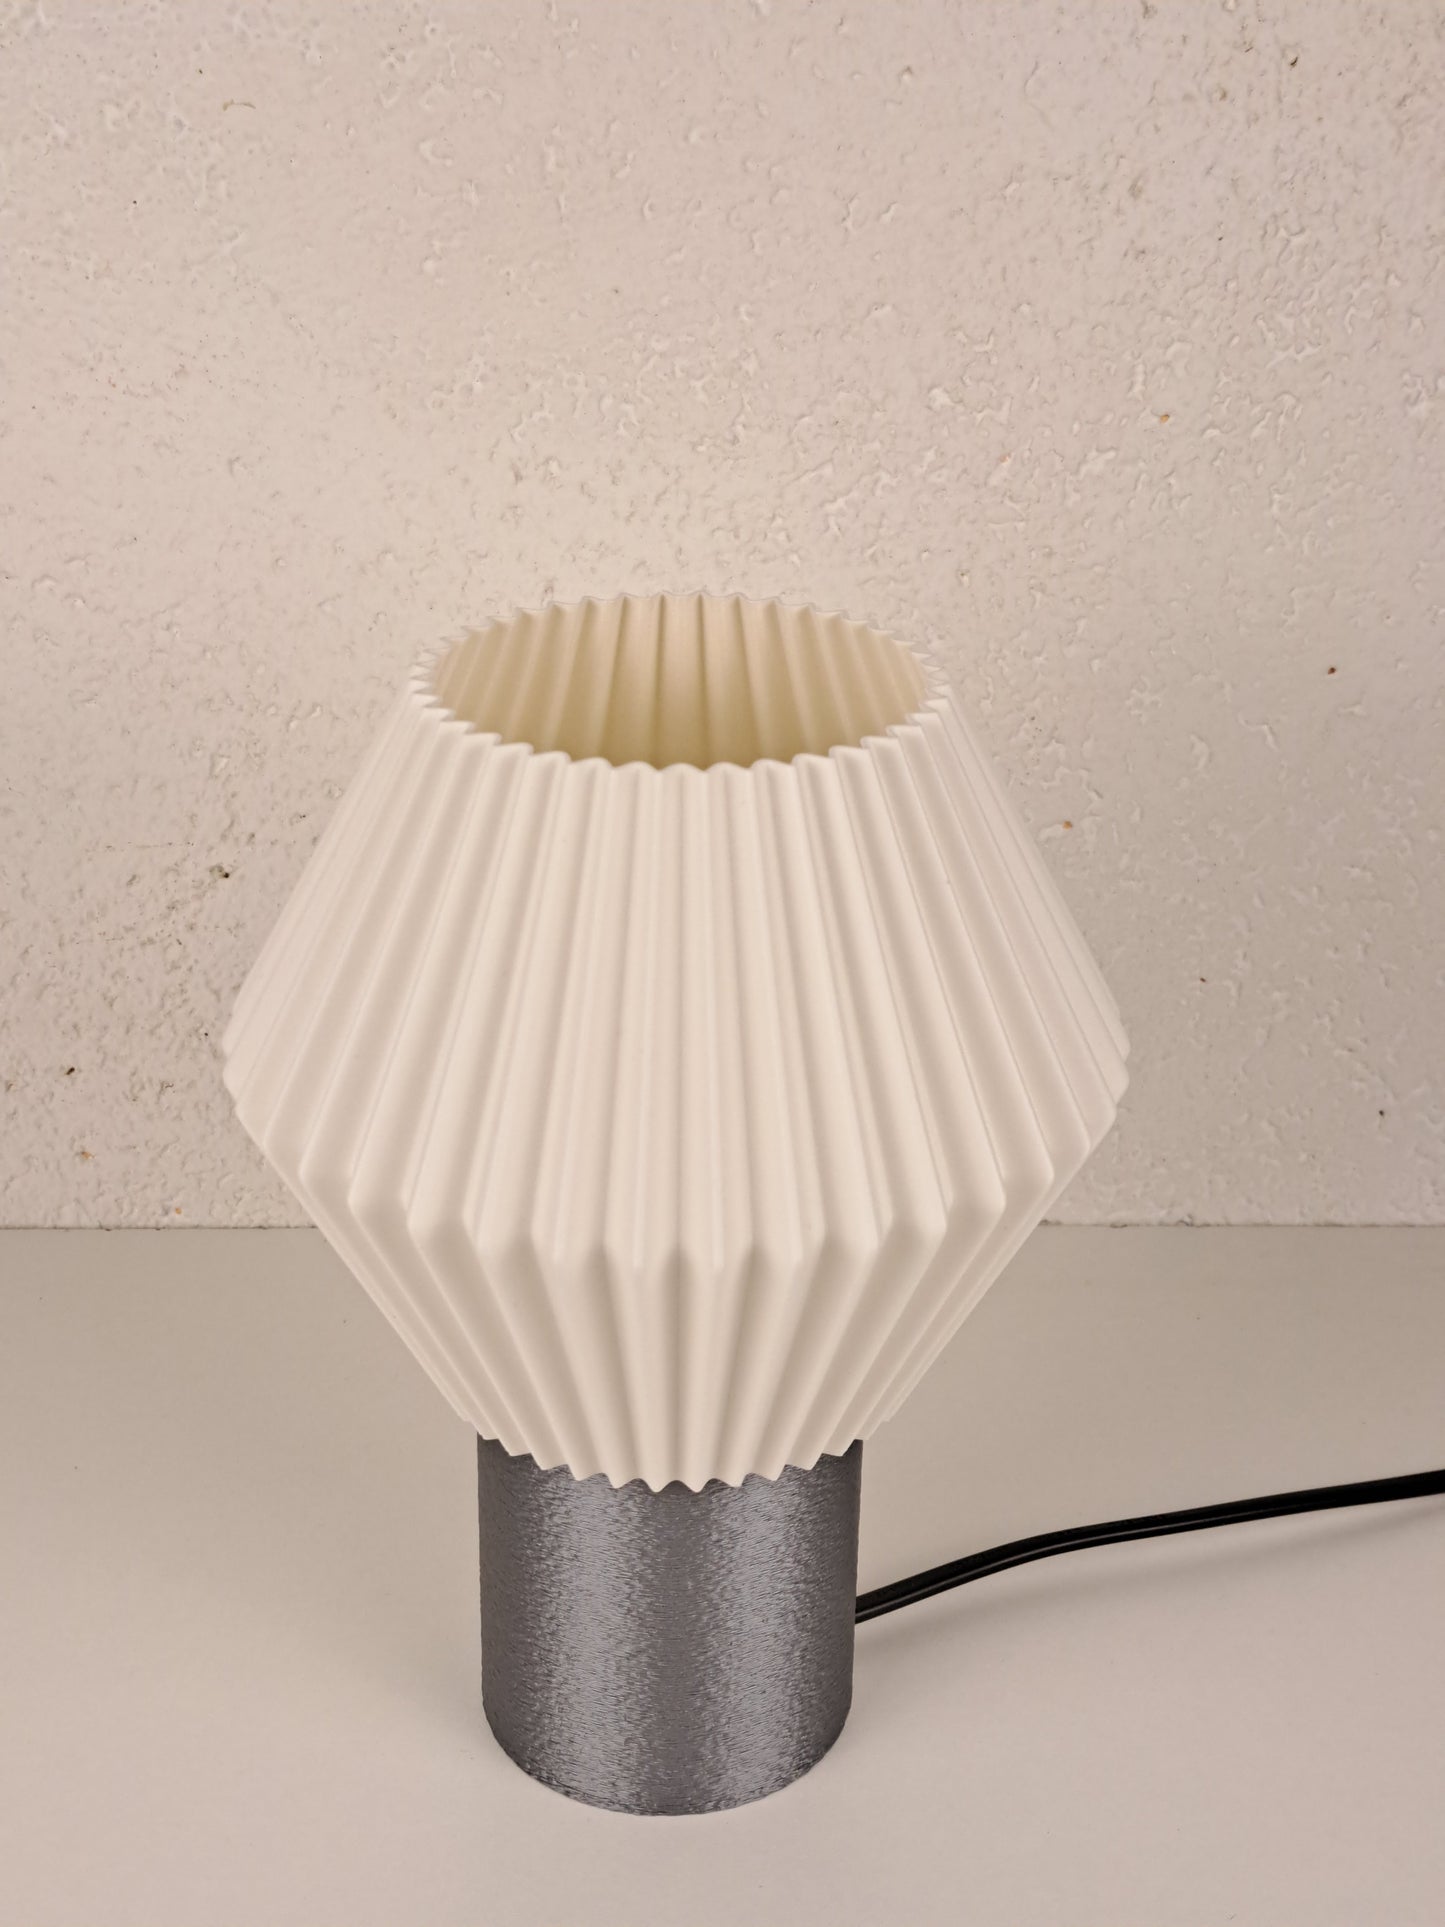 Table lamp “Geometric Glow”